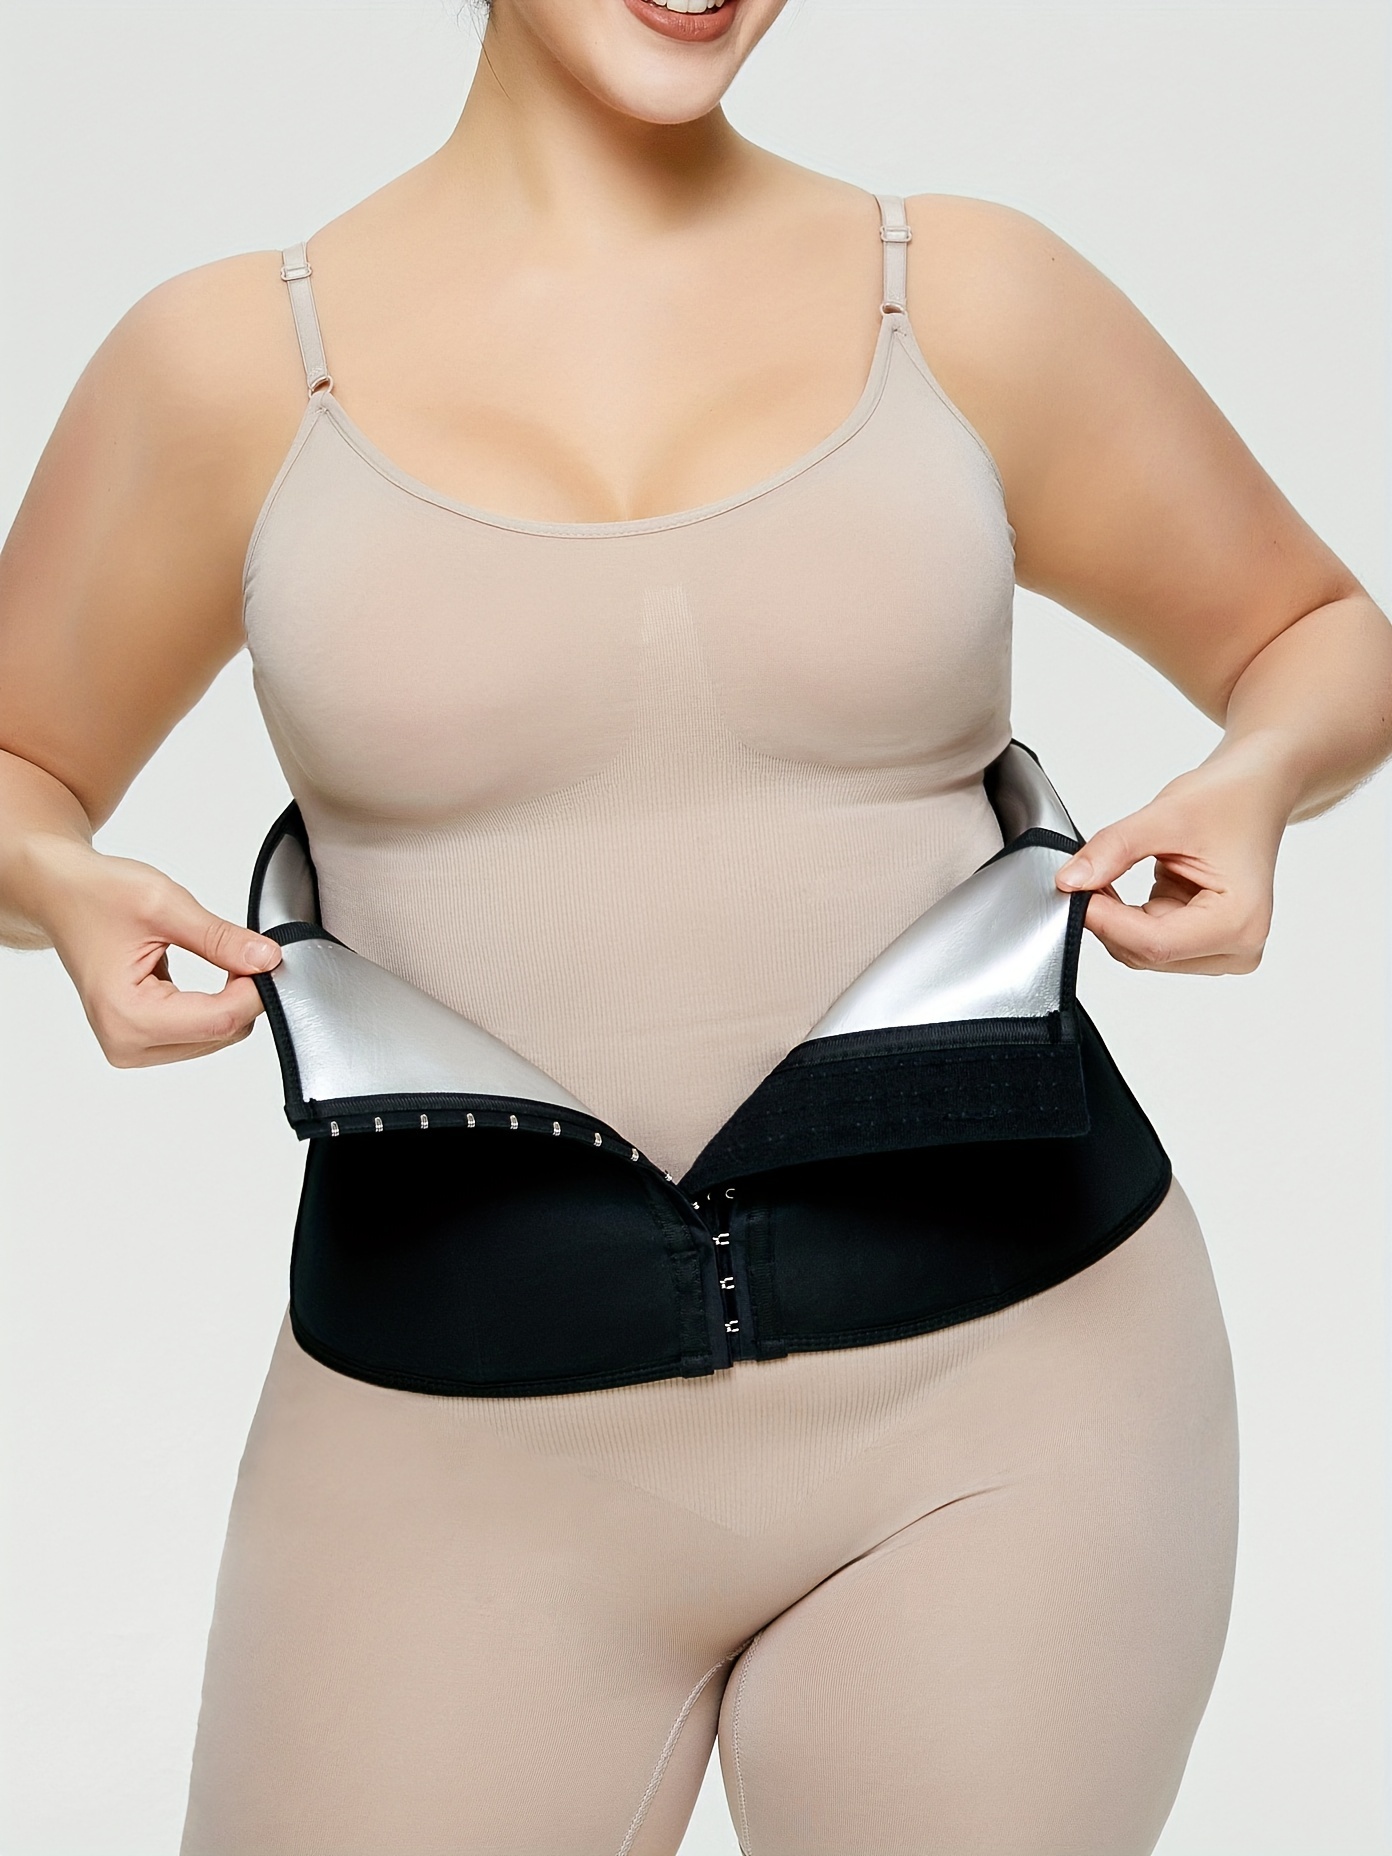 Menty Bodysuit Shapewear Women Full Body Shaper Plus Size Tummy